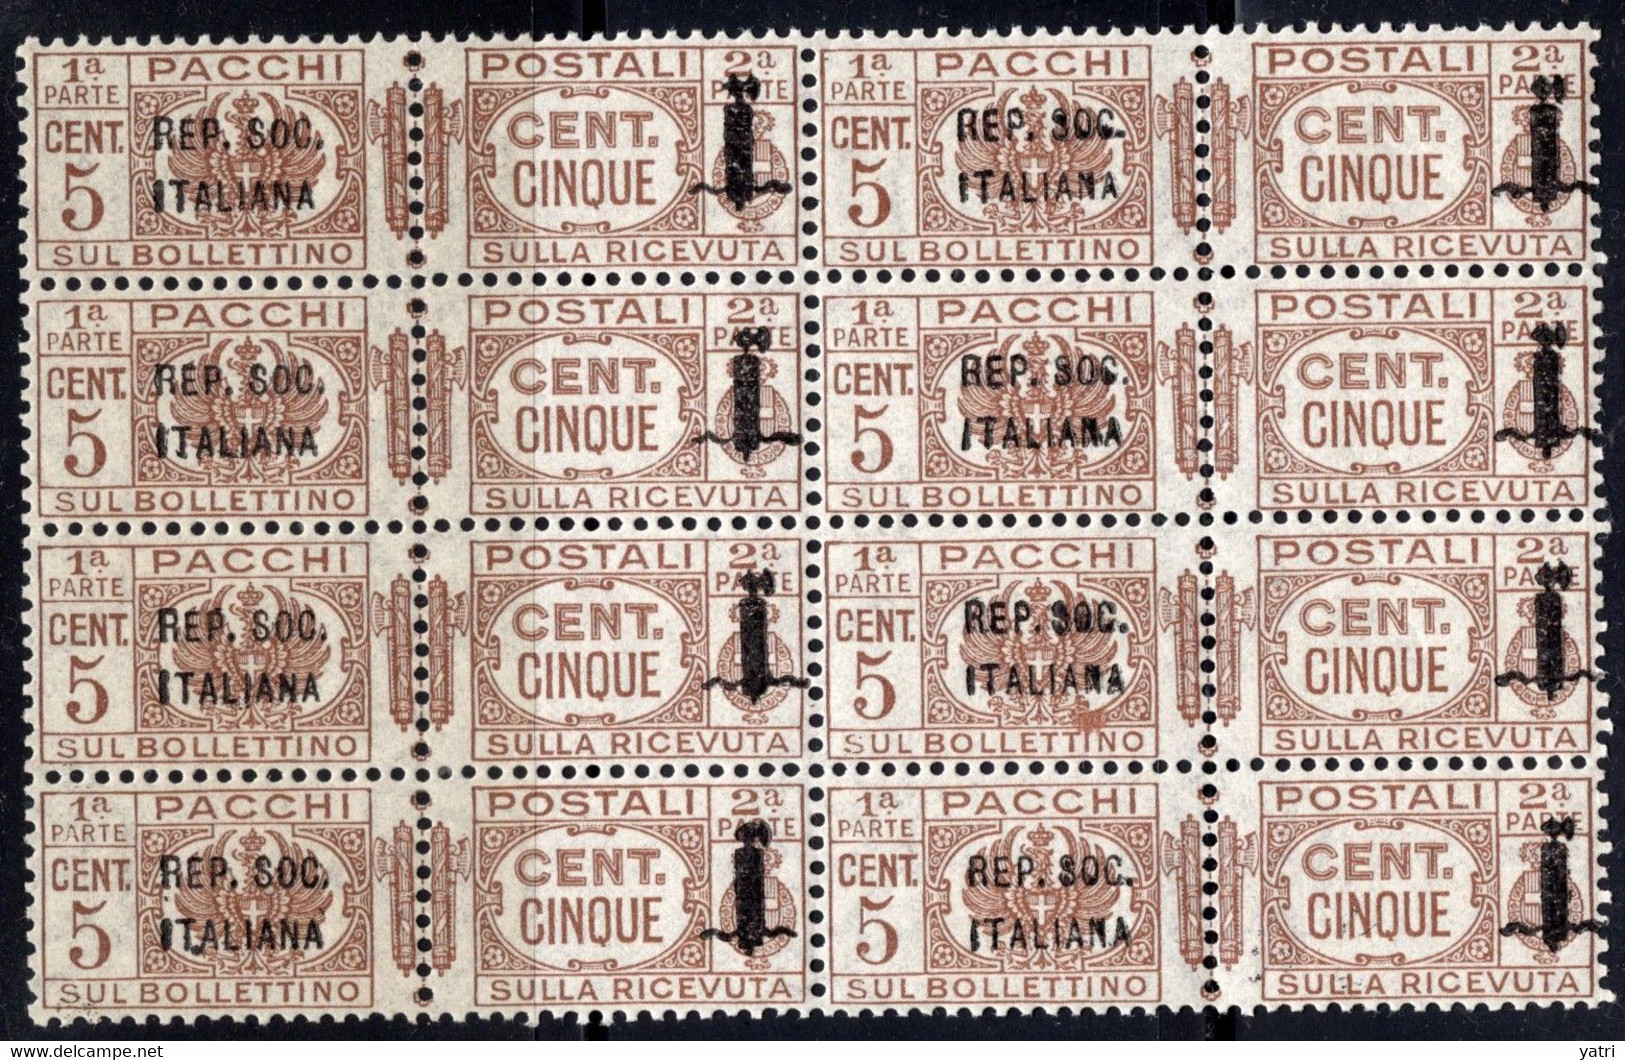 Repubblica Sociale (1944) - Pacchi Postali, 5 Cent. ** - Postal Parcels